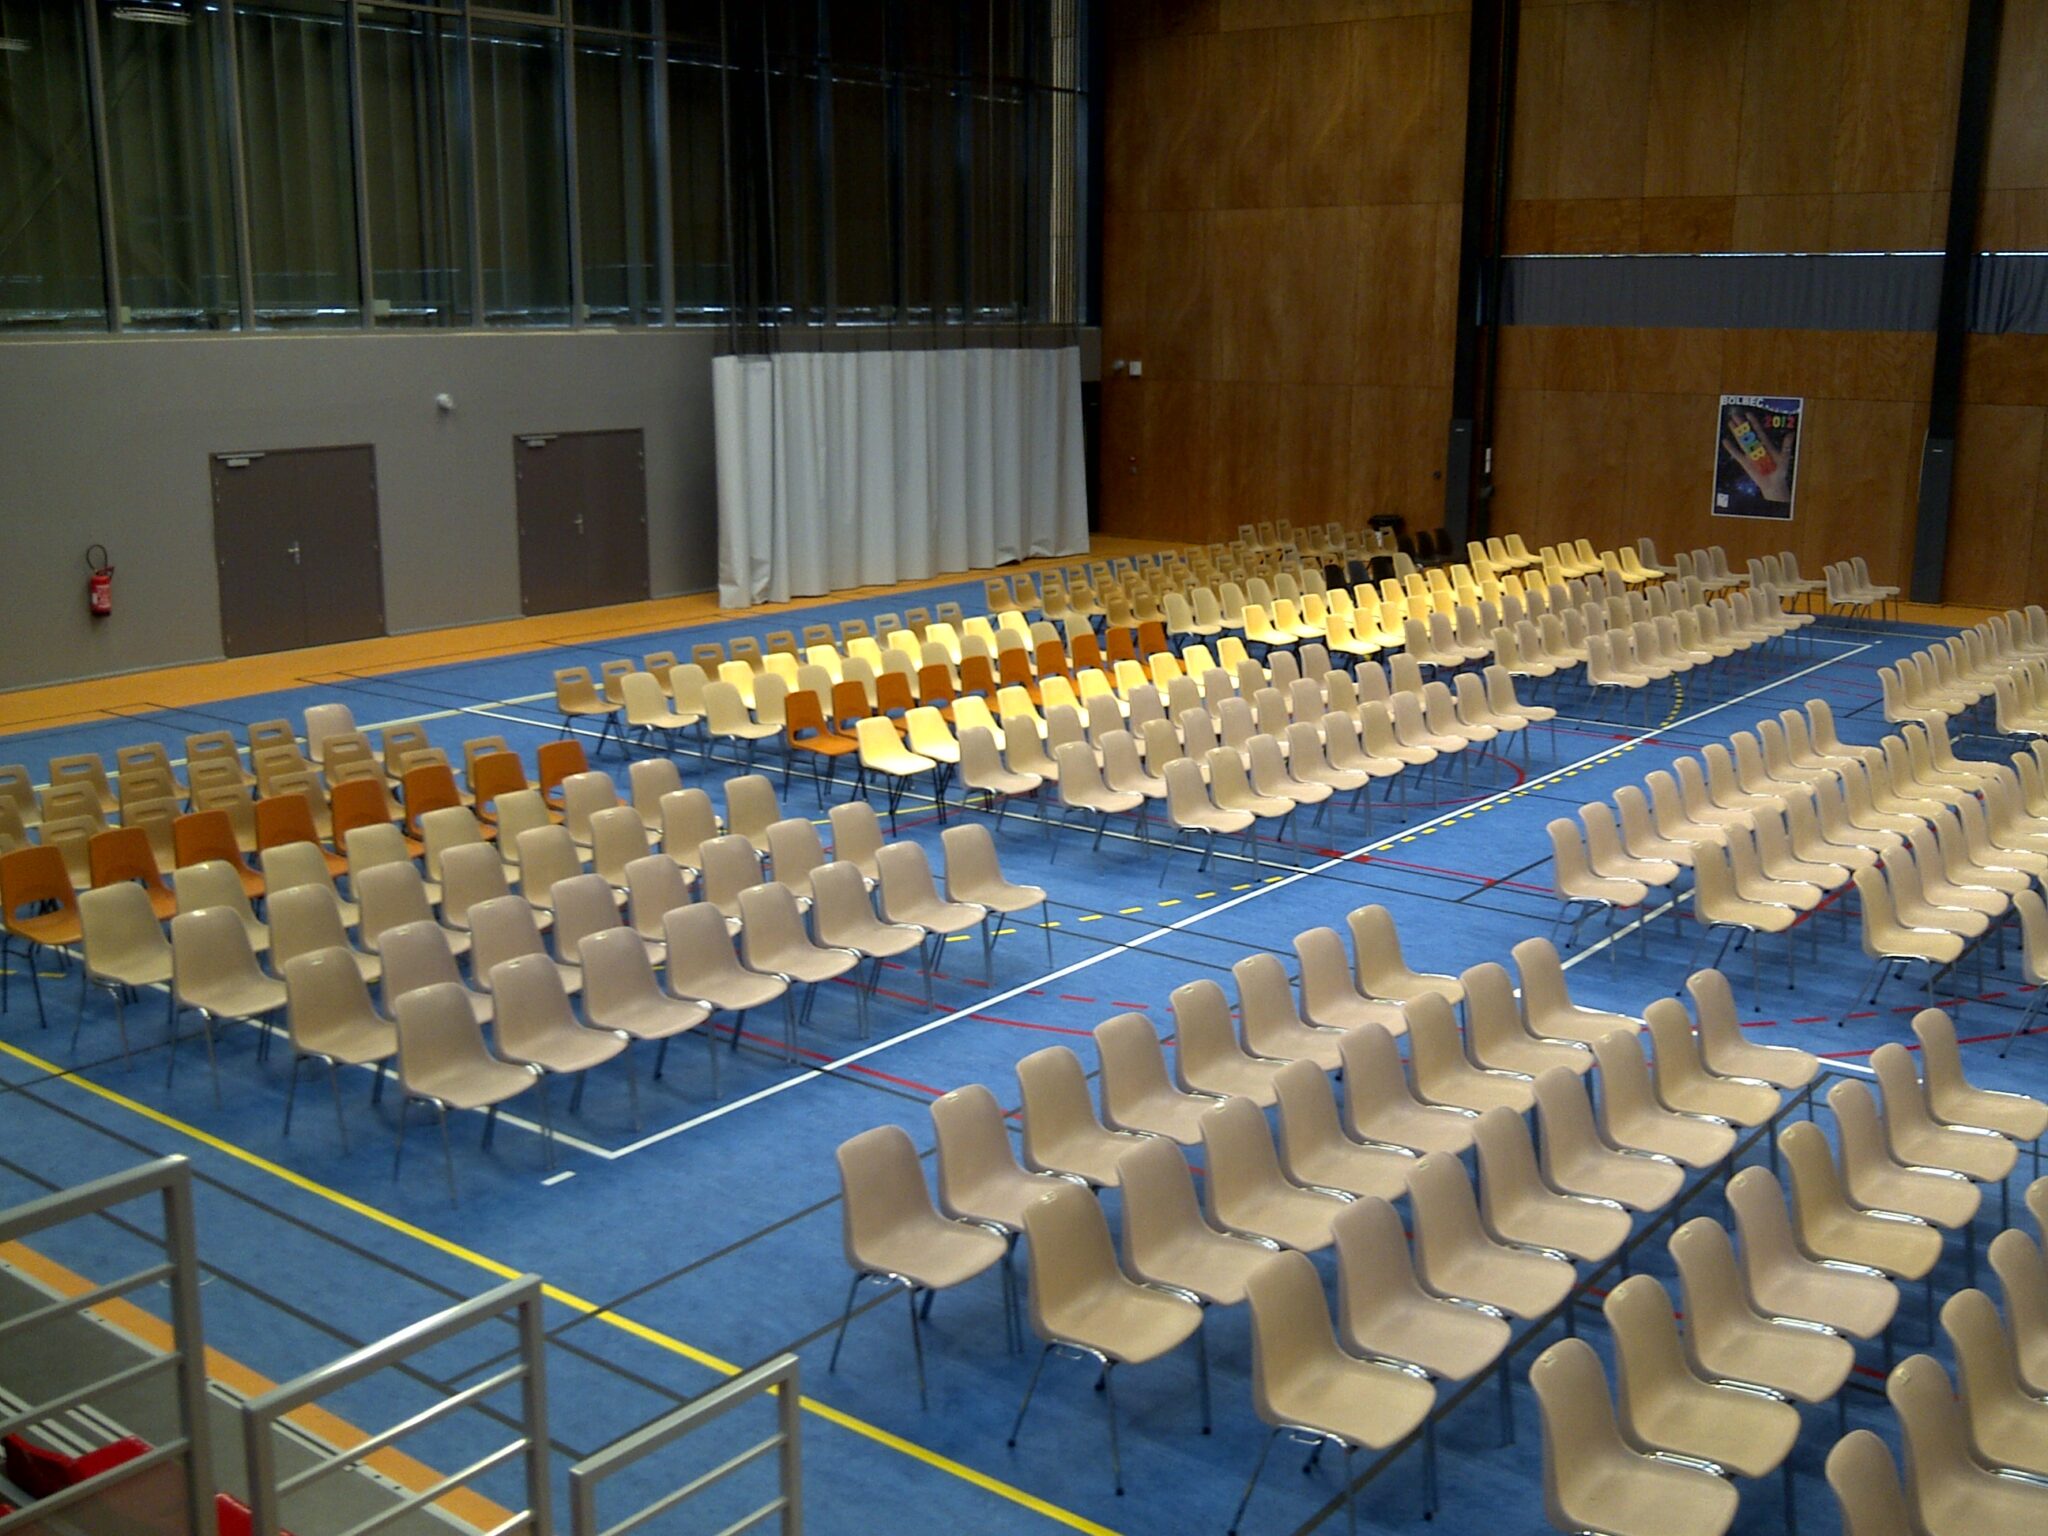 Salle polyvalente avec rangées de chaises vides.